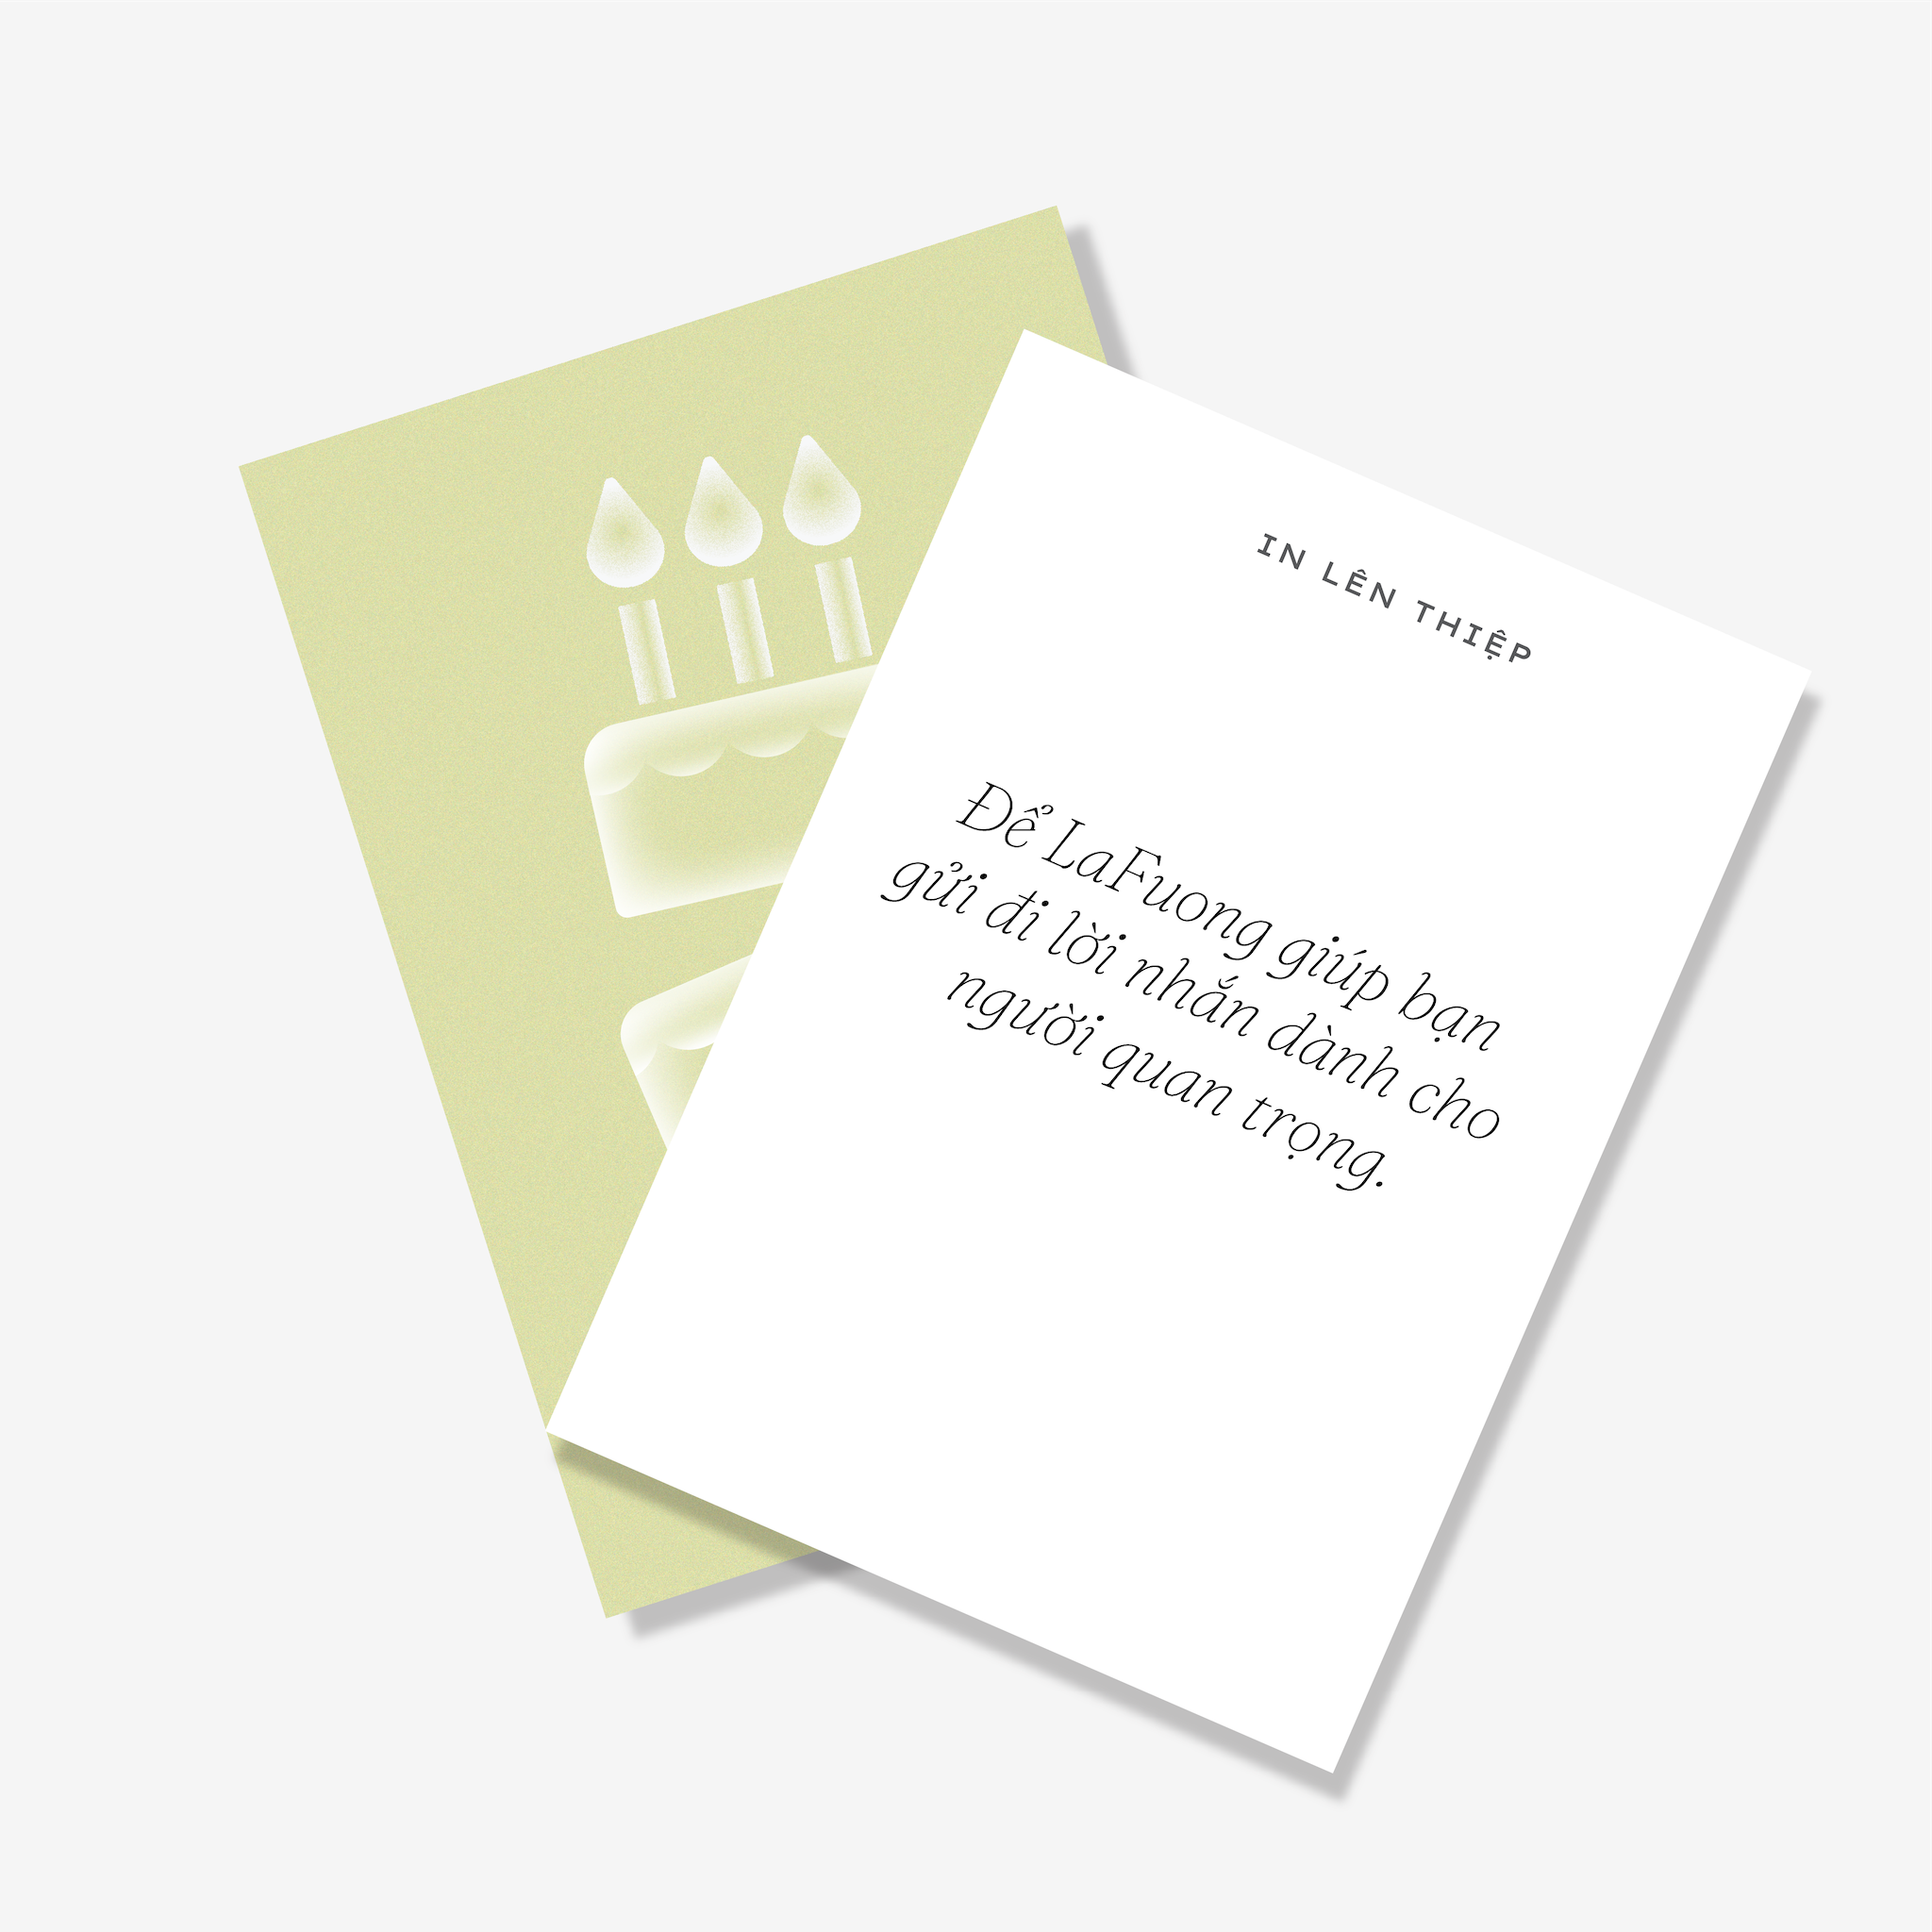 LaFuong Pastry – Thiệp Birthday Cake – Kích thước A6. Để những lời thương yêu được gửi đi.. Không chỉ đơn thuần là tặng một chiếc bánh, LaFuong hiểu rằng mỗi món quà trao đi sẽ luôn đi cùng với những thông điệp quan trọng. Nếu bạn muốn gửi thiệp kèm bánh và không tiện tự viết tay, LaFuong sẽ giúp bạn in những điều bạn muốn gửi gắm lên thiệp hoàn toàn miễn phí.. P/s: Điền nội dung bạn muốn in lên thiệp ở phần giỏ hàng nhé!